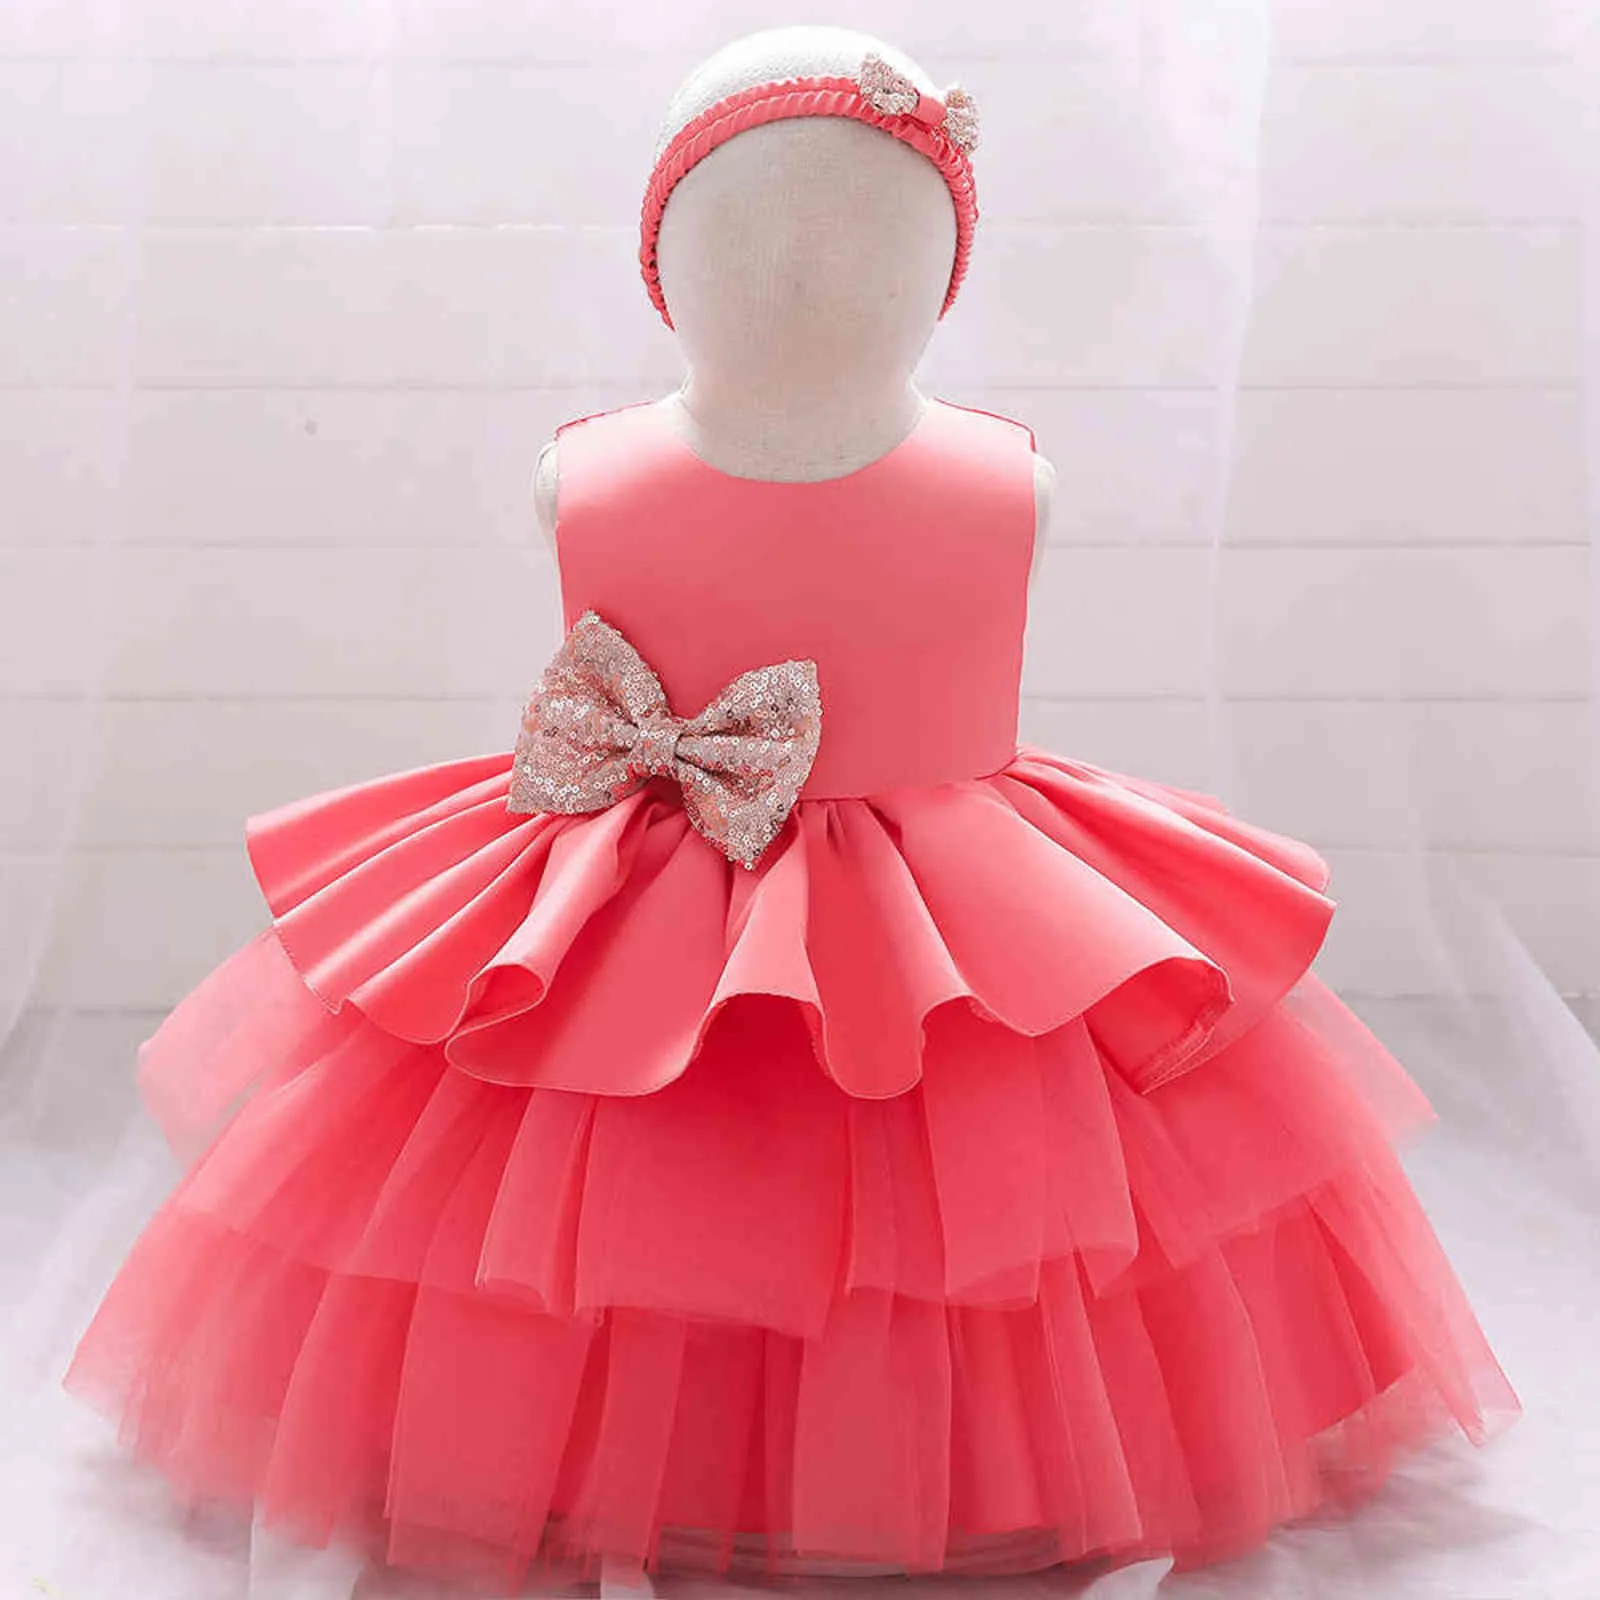 Bebê carnaval roupa bebê menina princesa vestido de casamento infante vestido vestido de aniversário vestido recém-nascido enviar headband 0-5y g1129